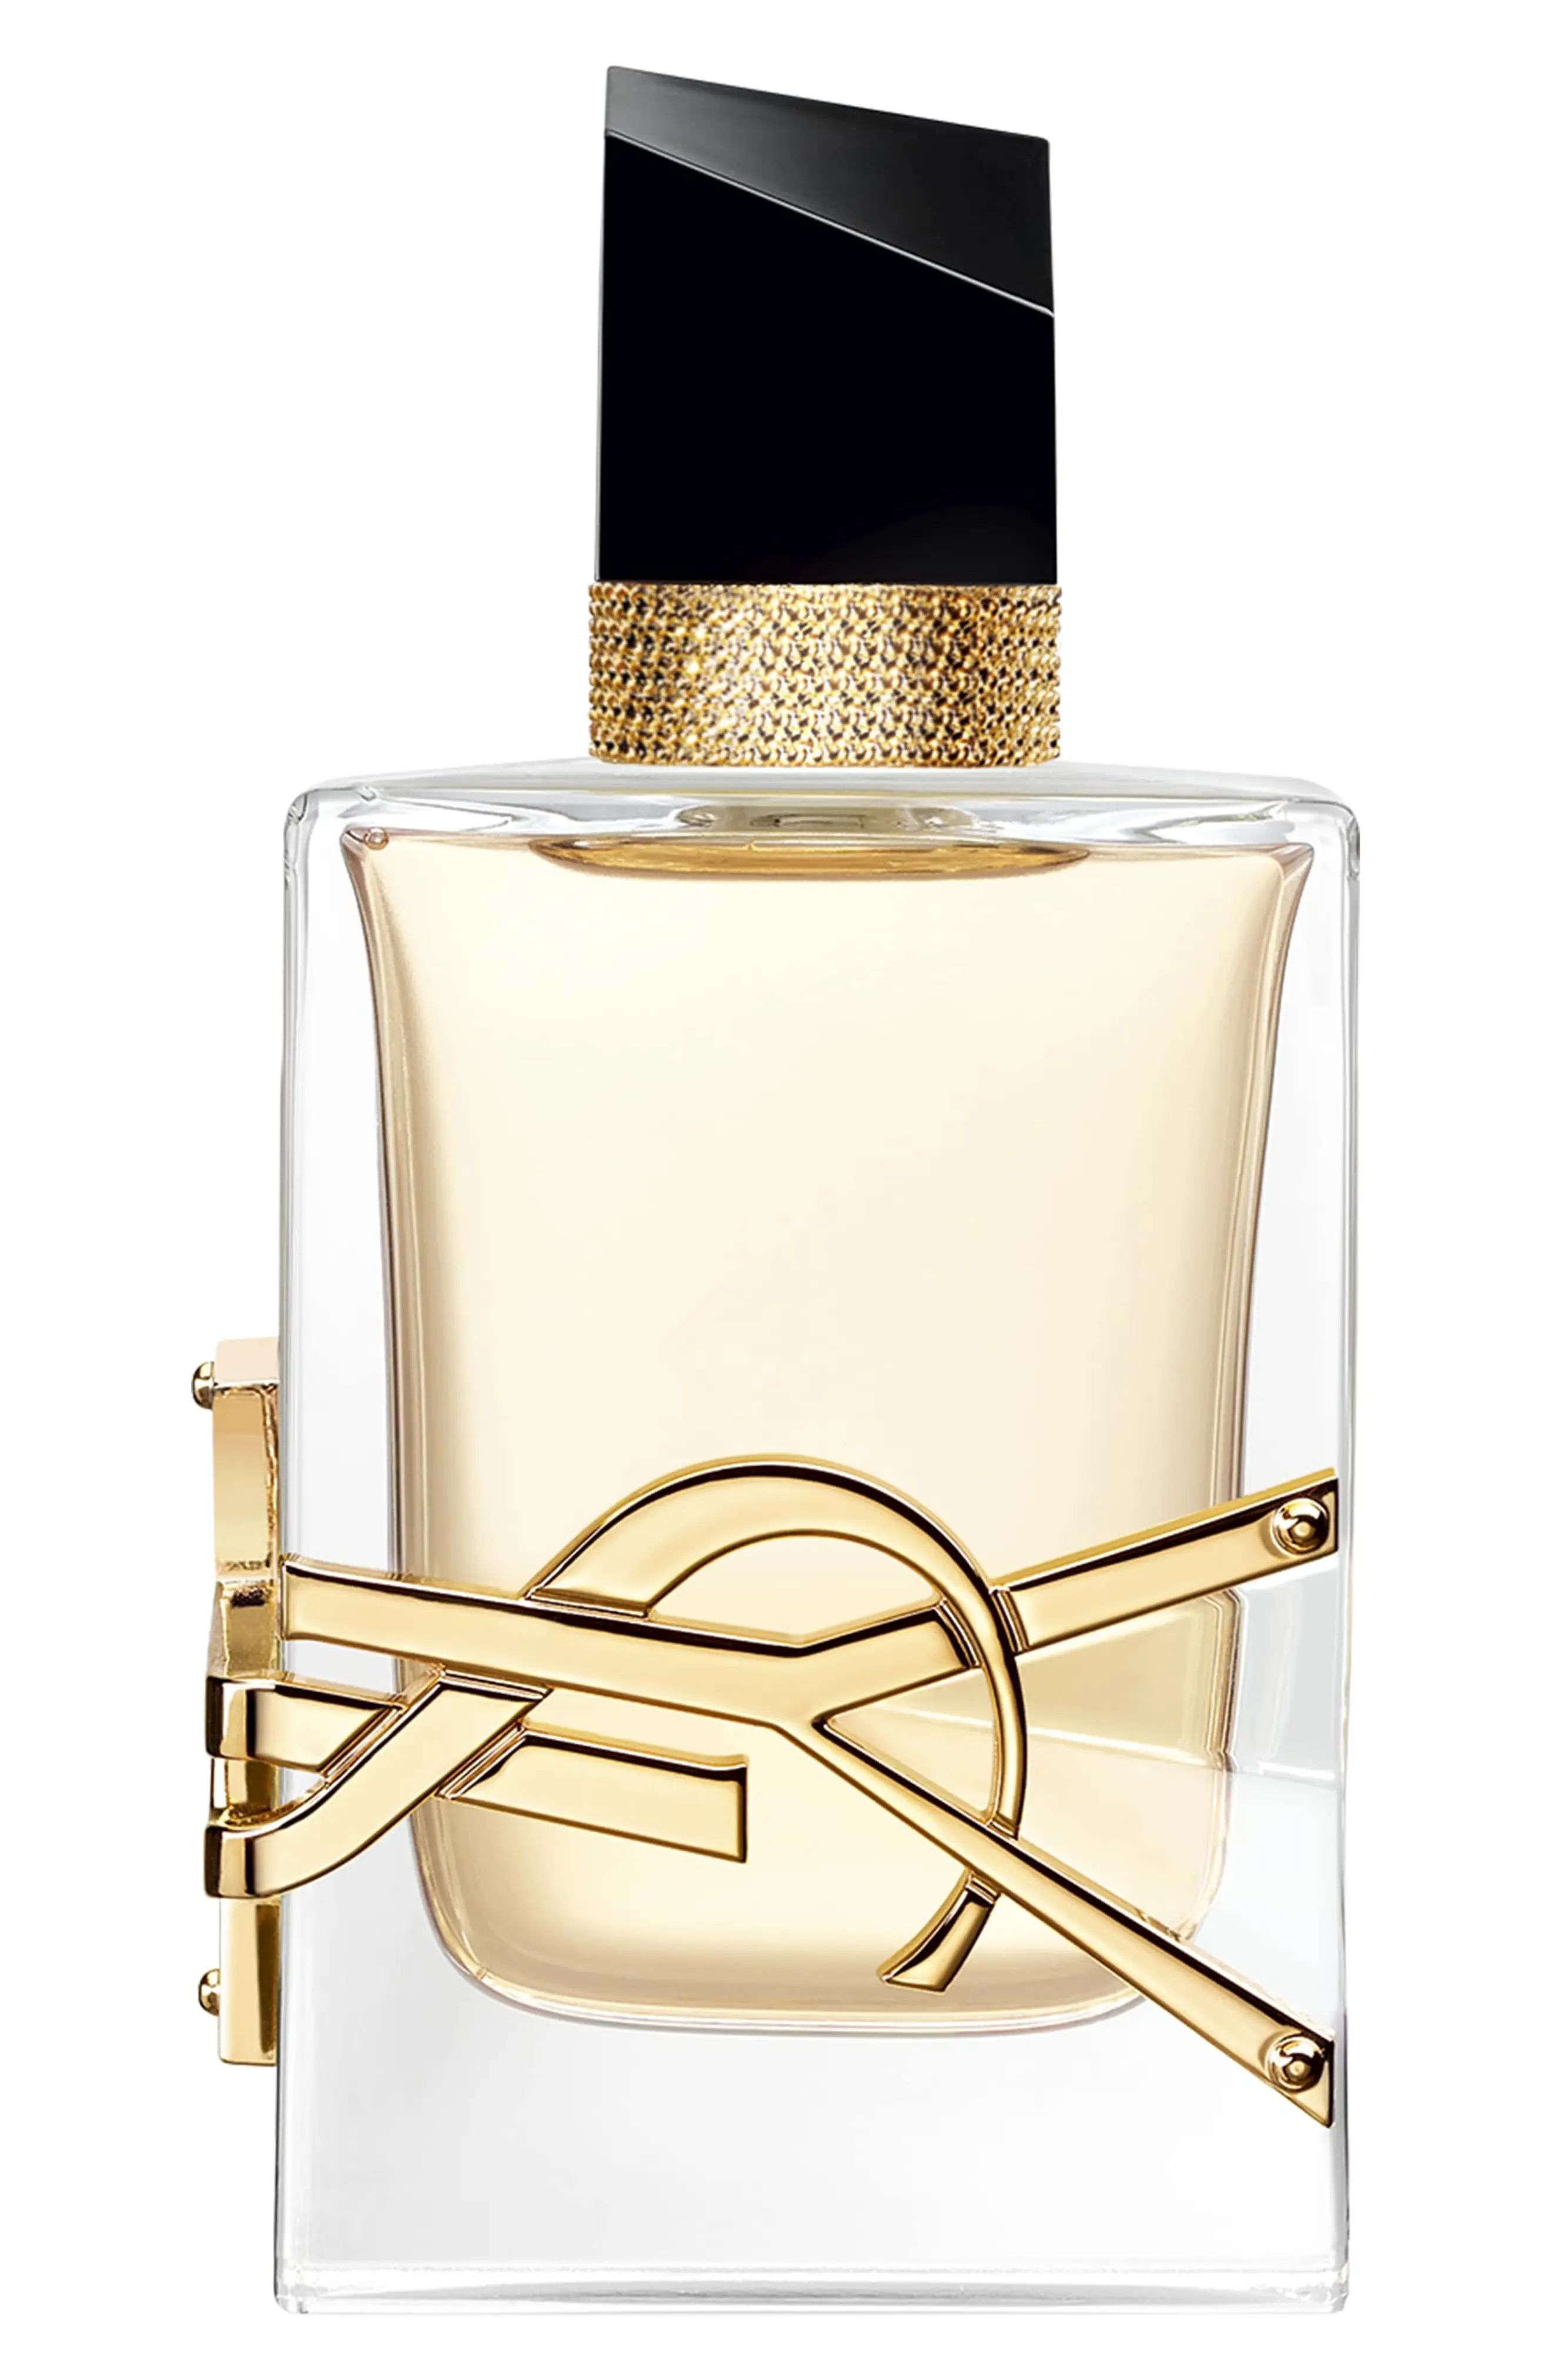 Yves Saint Laurent Libre Eau de Parfum Spray Fragrance, Size 3 Oz at Nordstrom | Nordstrom